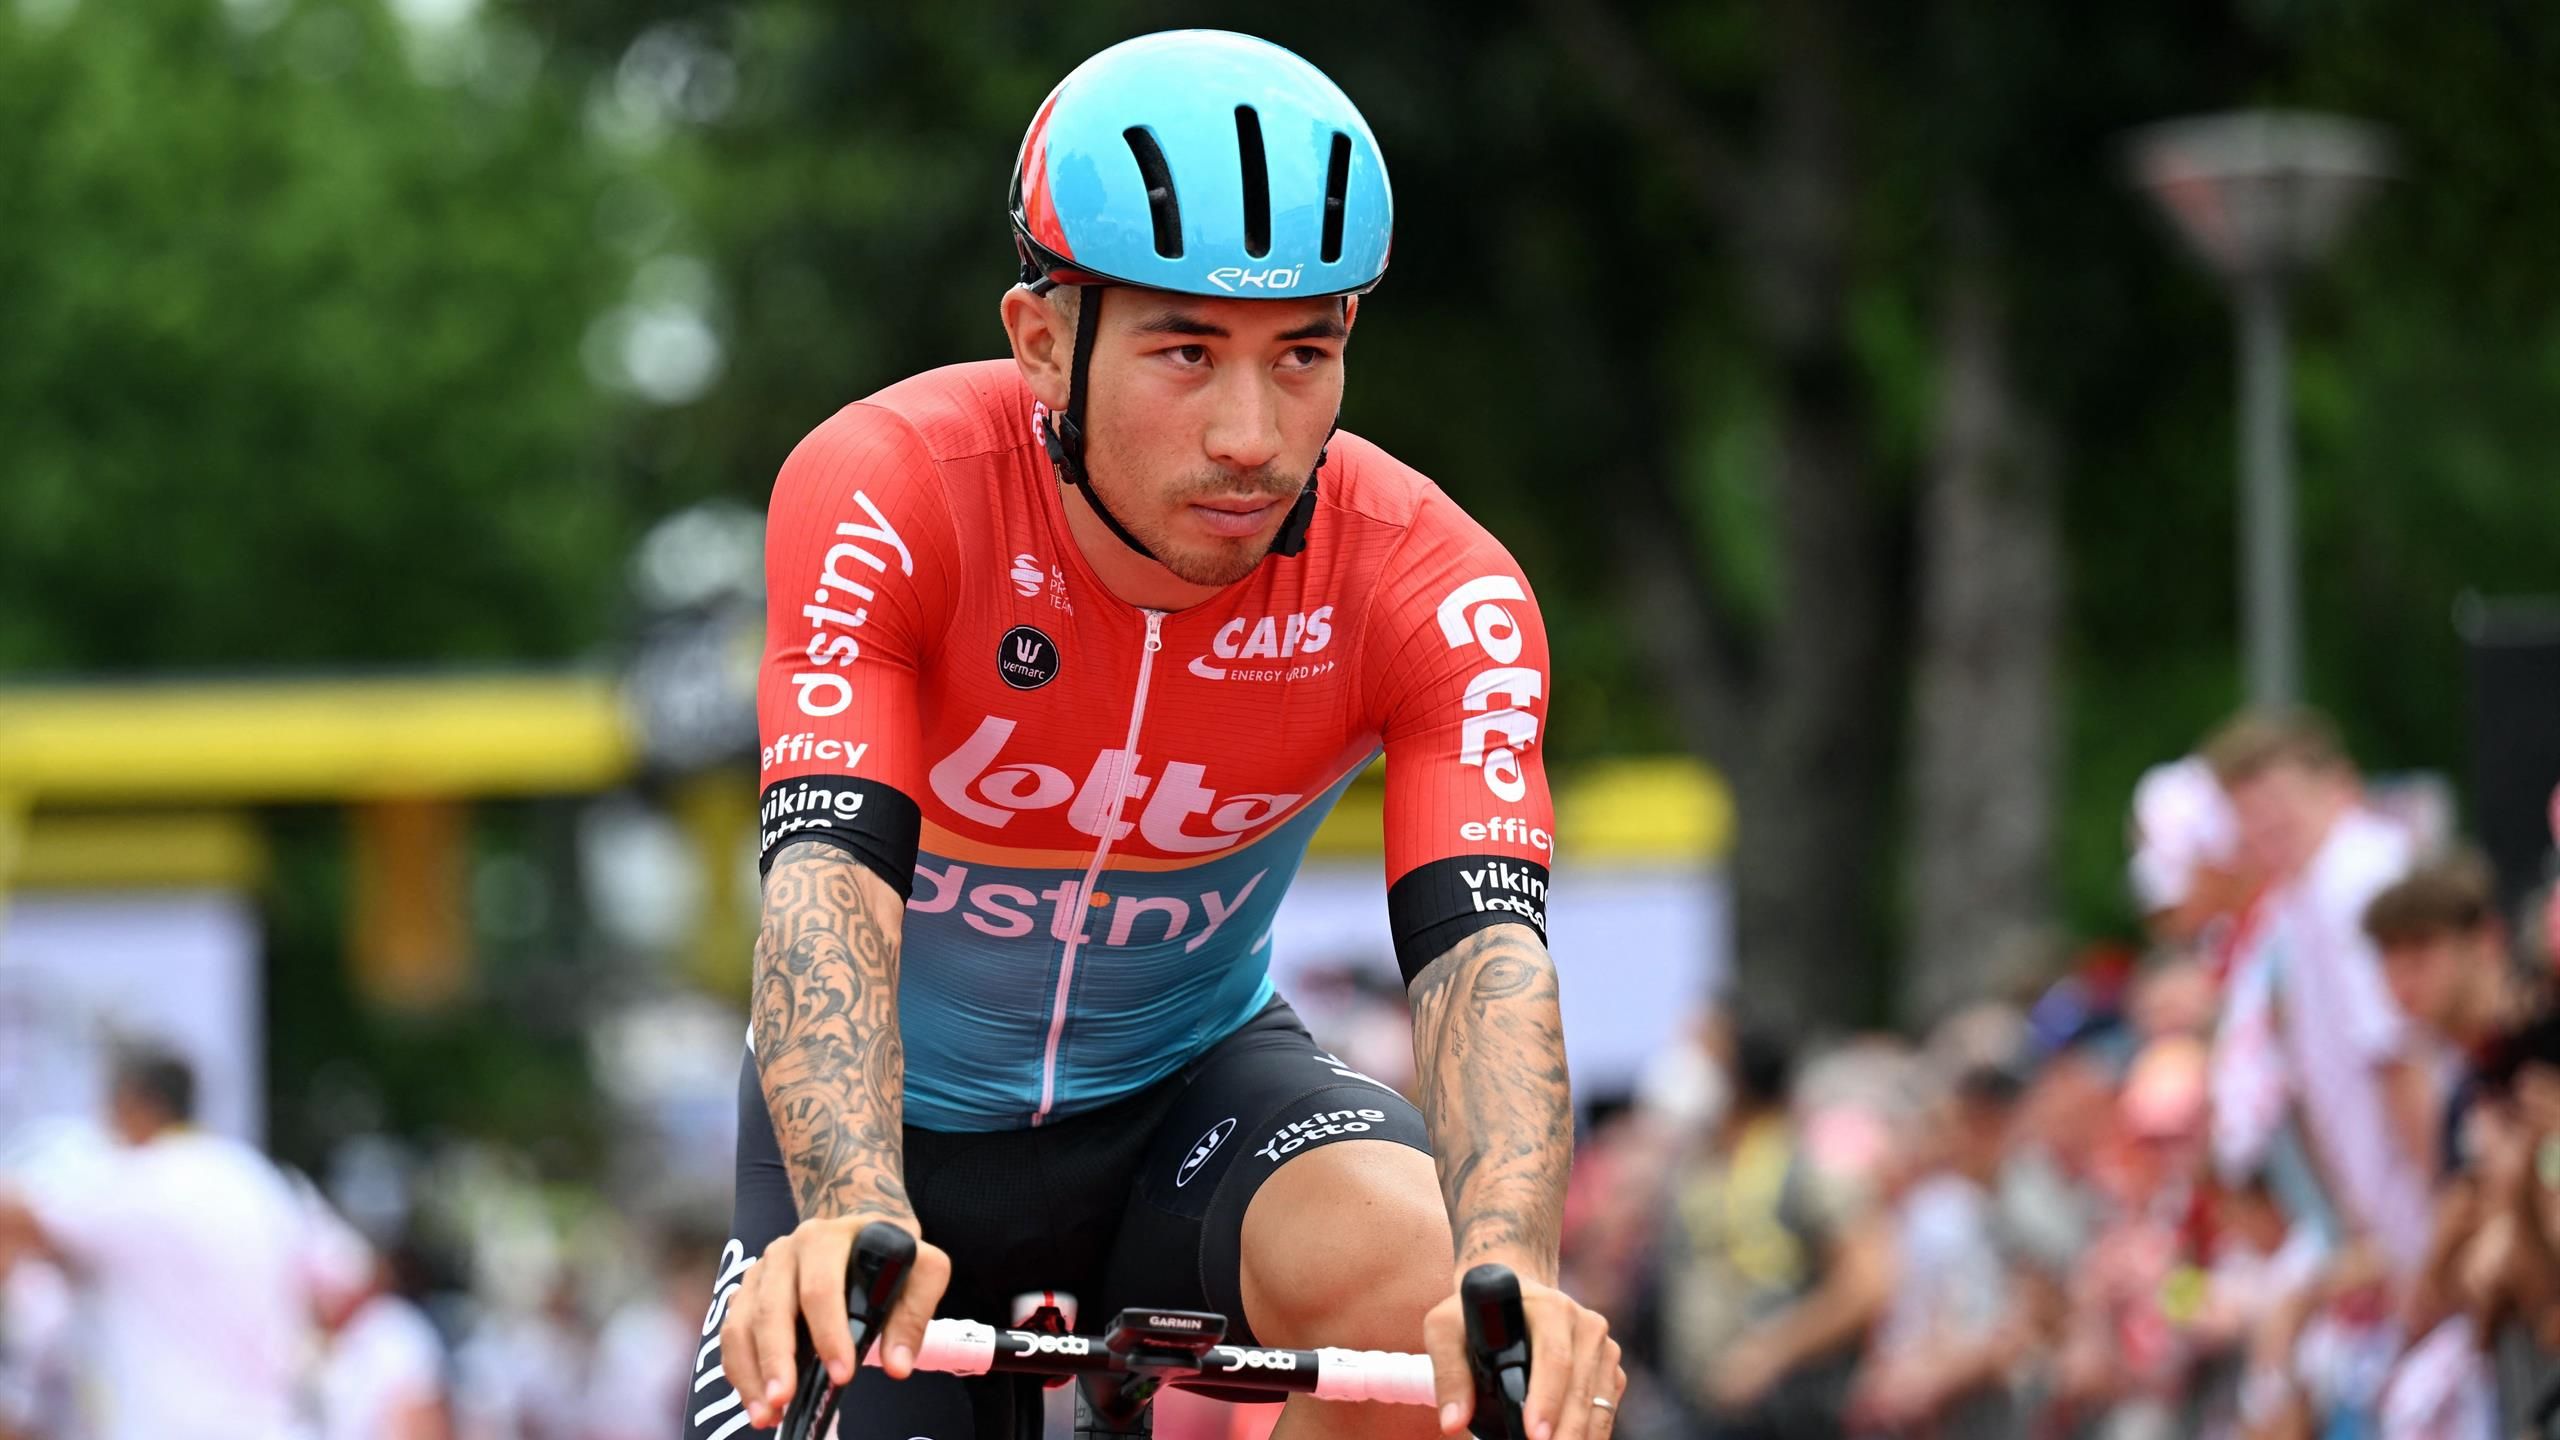 Cyclisme Tour de France / Heulot allume Ewan : "J'ai sacrifié beaucoup de coureurs pour lui, et je le regrette"